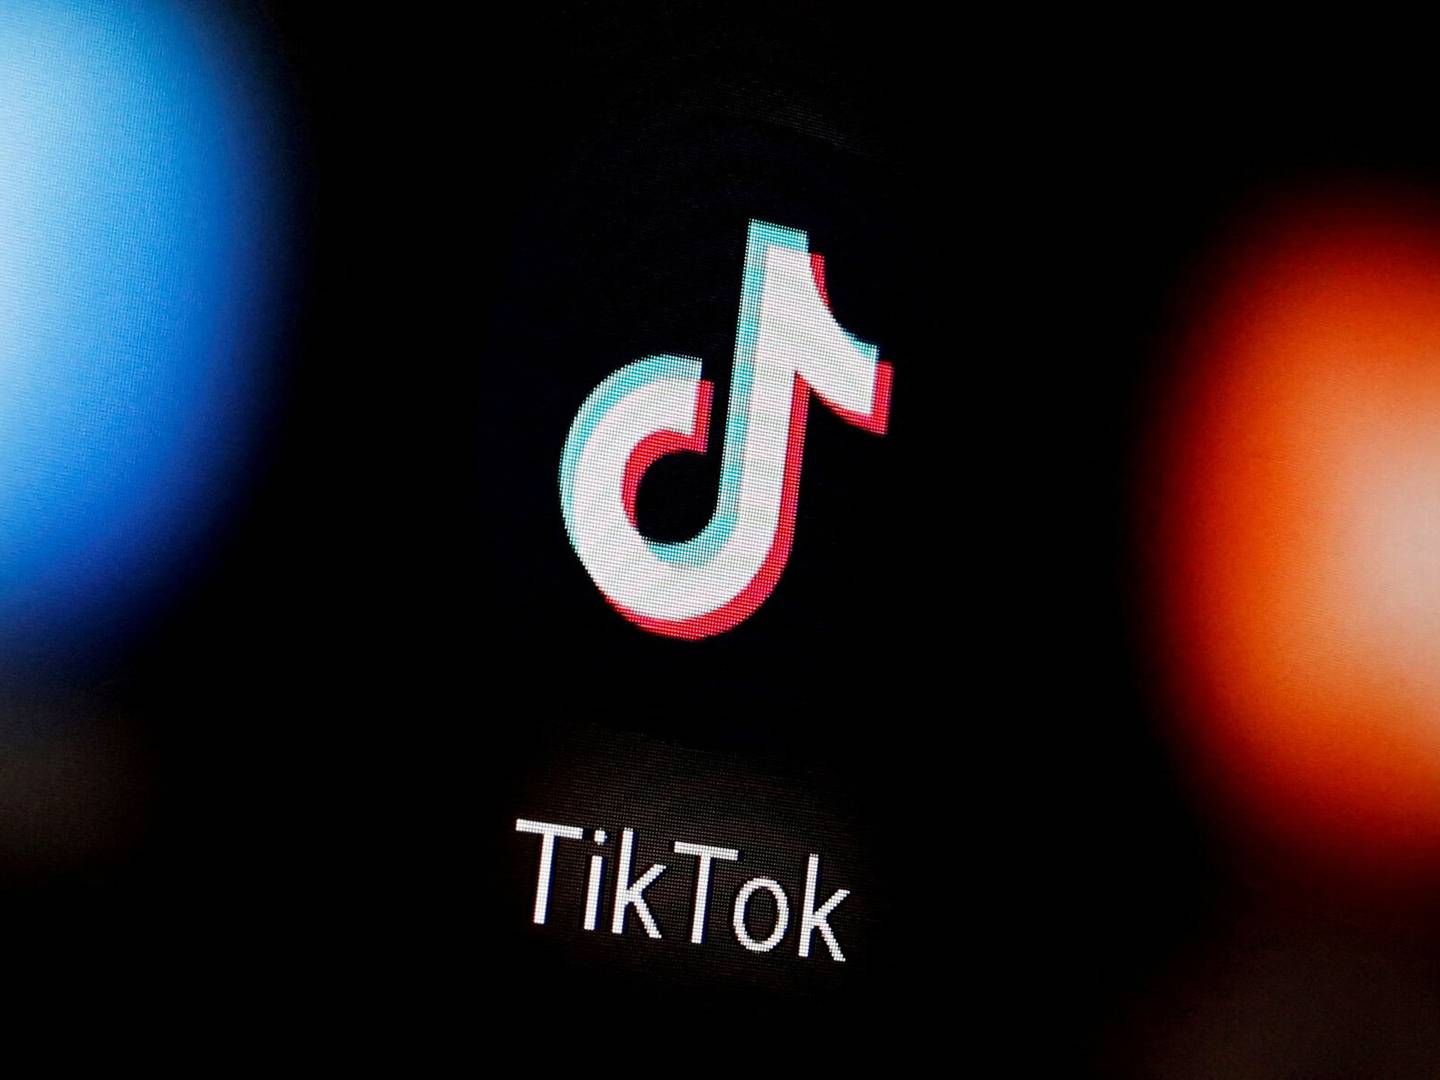 Private virksomheder tager ikke sikkerhedsrisikoen ved TikTok alvorligt nok, mener it-sikkerhedsekspert i IDA. | Foto: Dado Ruvic/reuters/ritzau Scanpix